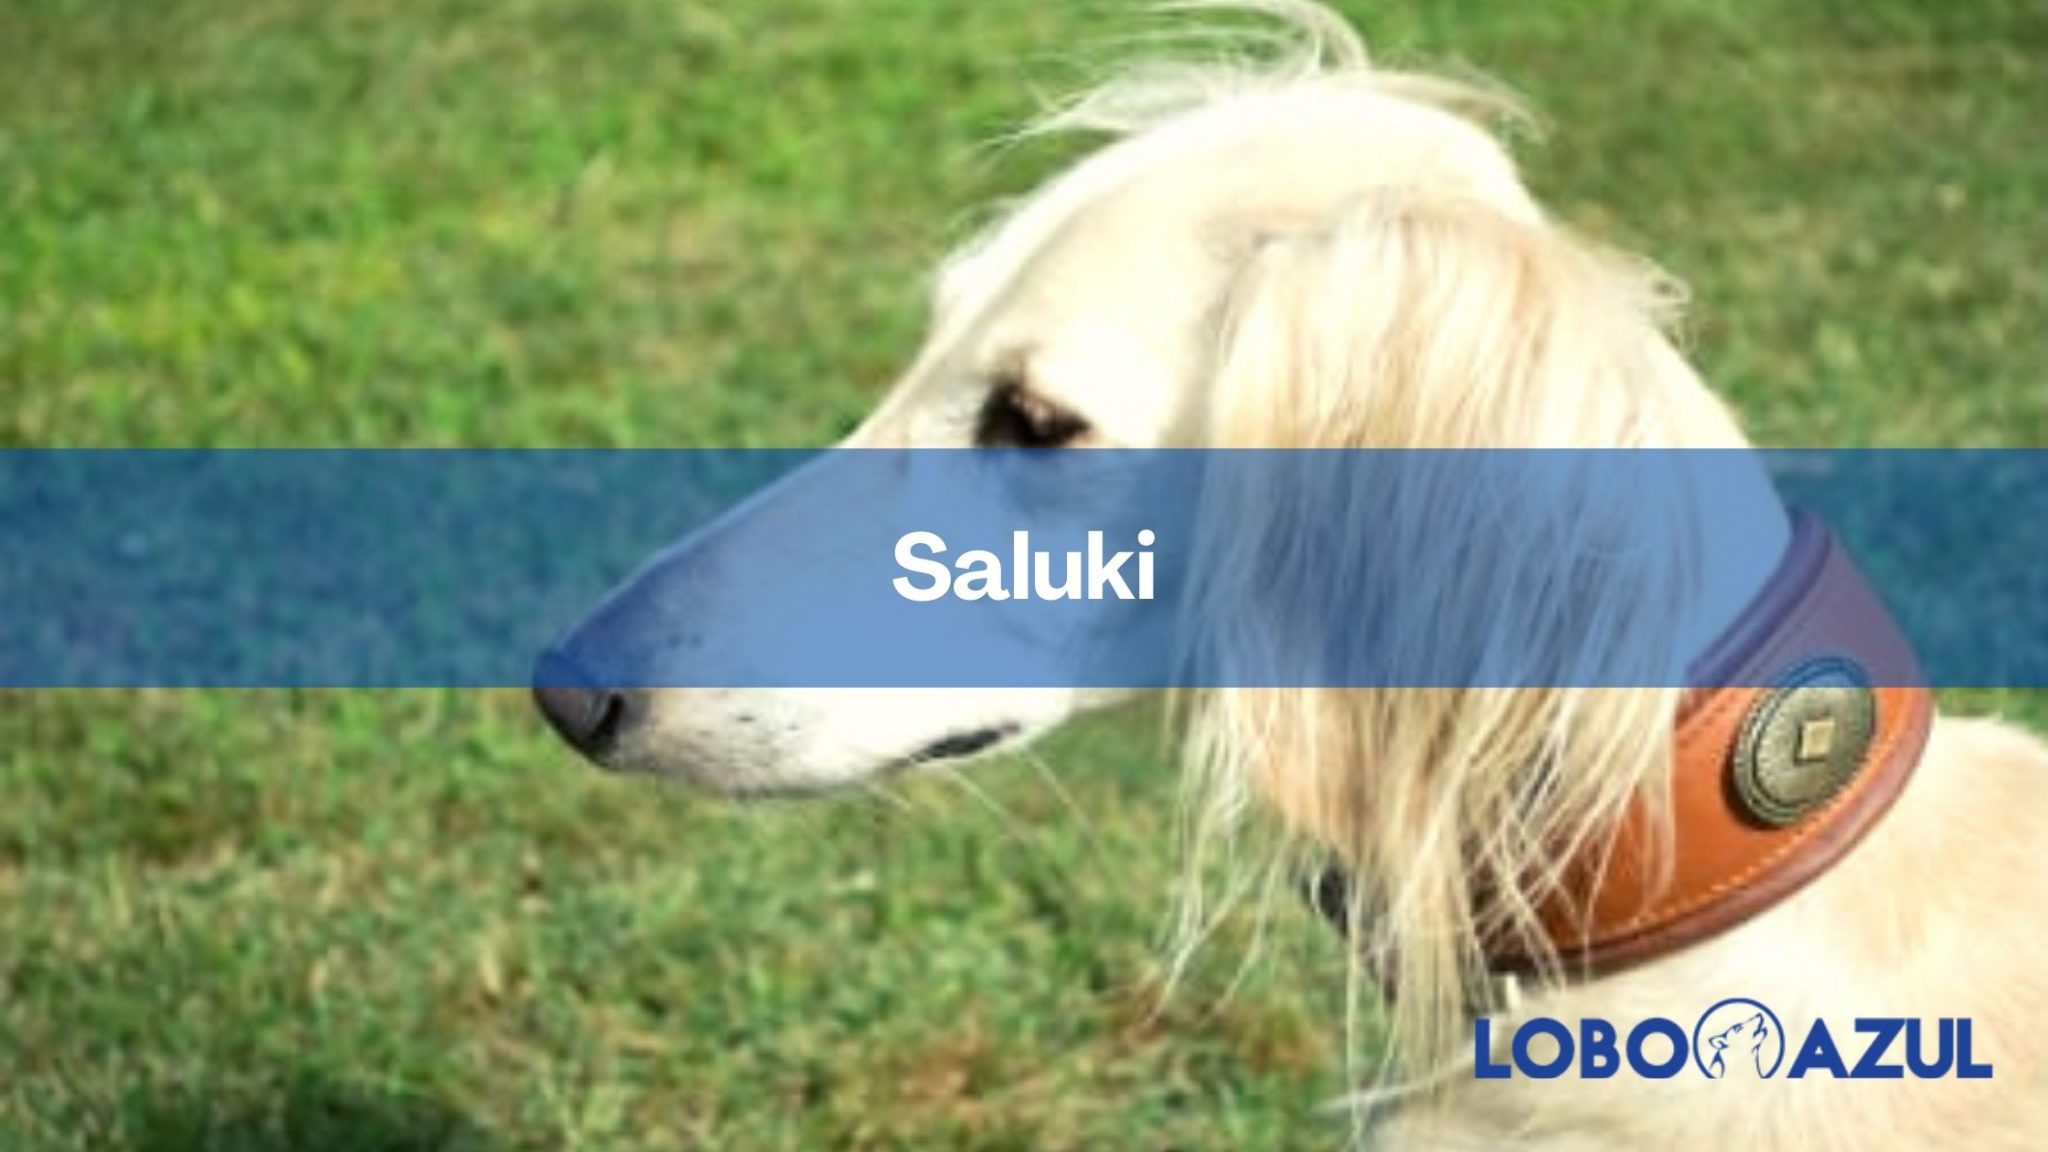 Saluki - Descubre esta apreciada raza canina